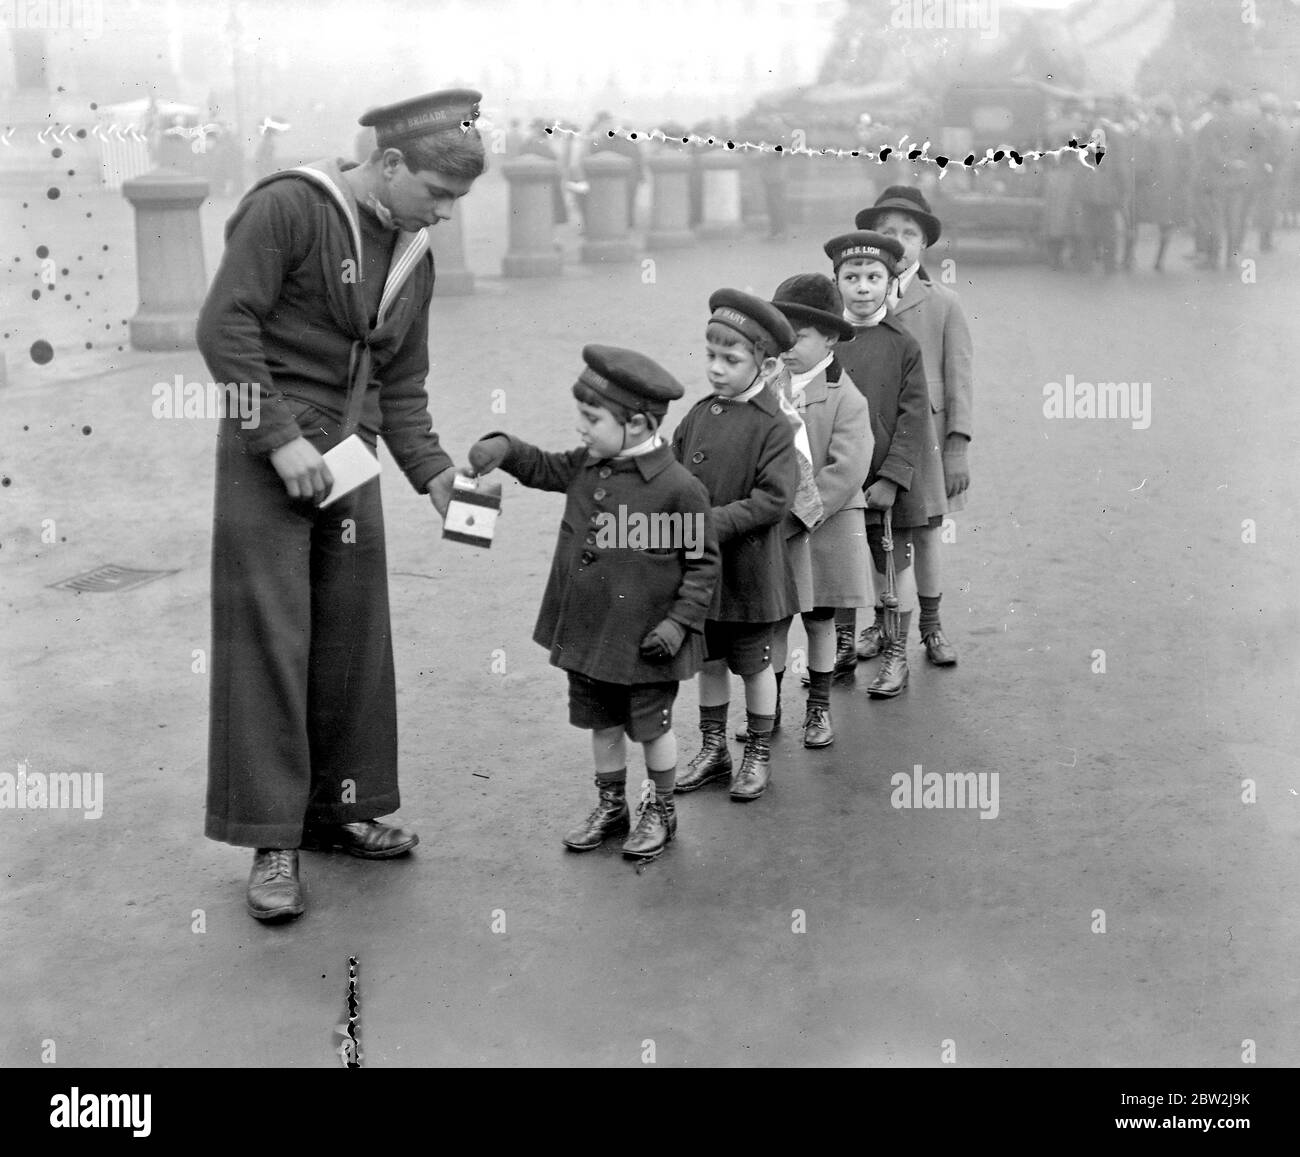 Trafalgar Day, Trafalgar Square, Londra. Cinque ragazzi piccoli contribuiscono al fondo della Navy League. 22 ottobre 1919 Foto Stock